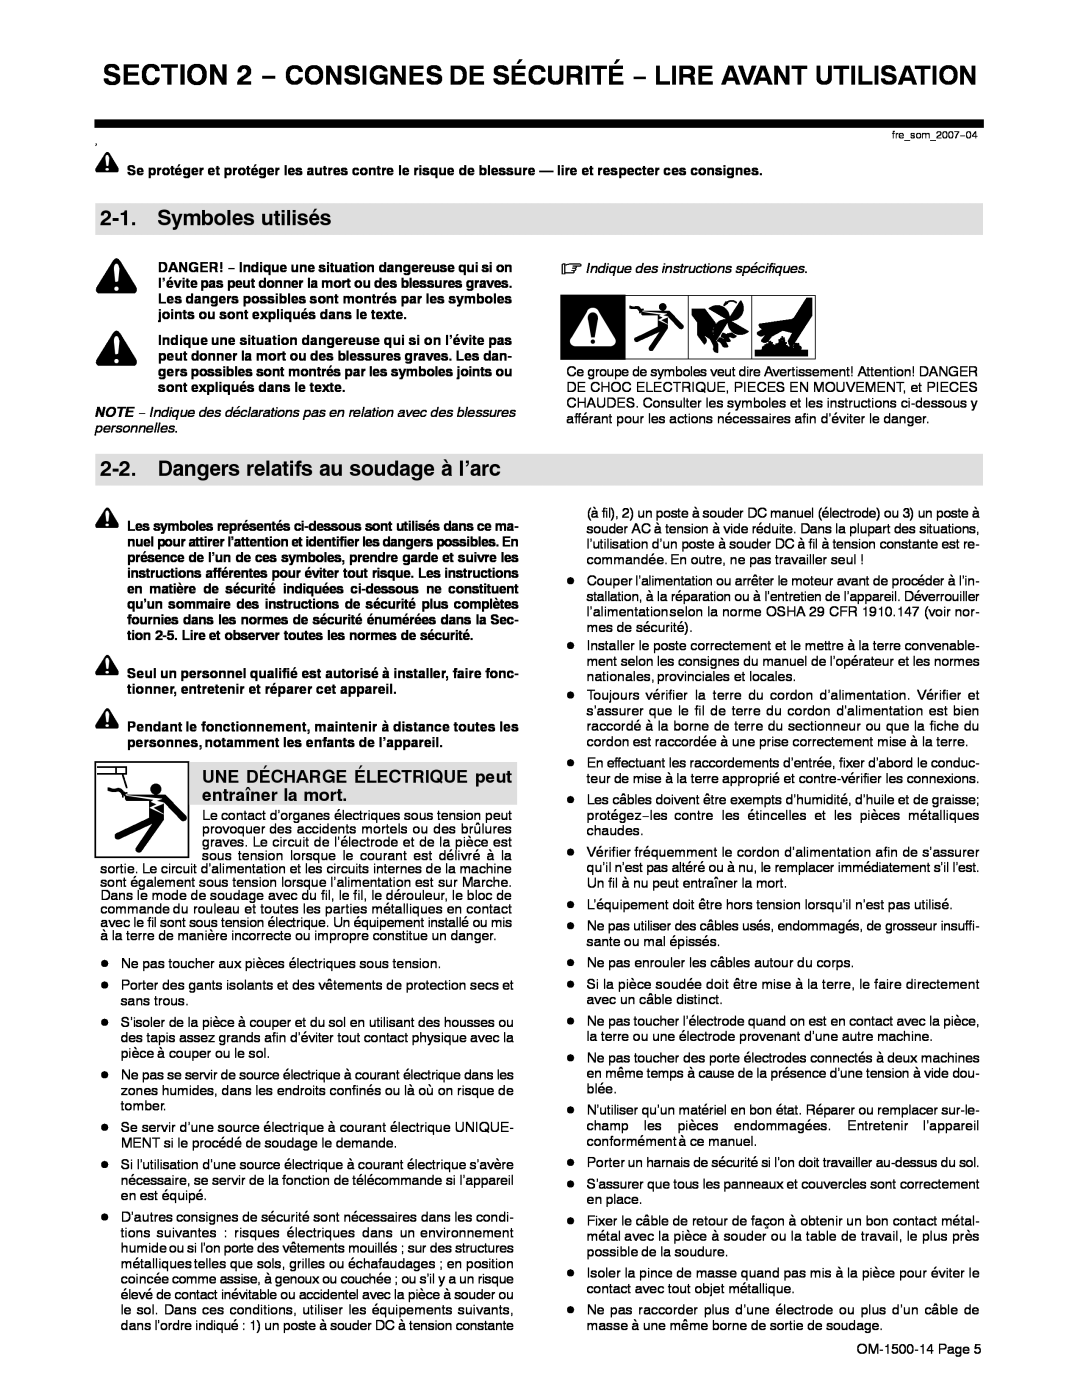 Miller Electric and DS-74DX16, DS-74DX12 manual Symboles utilisés, Dangers relatifs au soudage à l’arc 